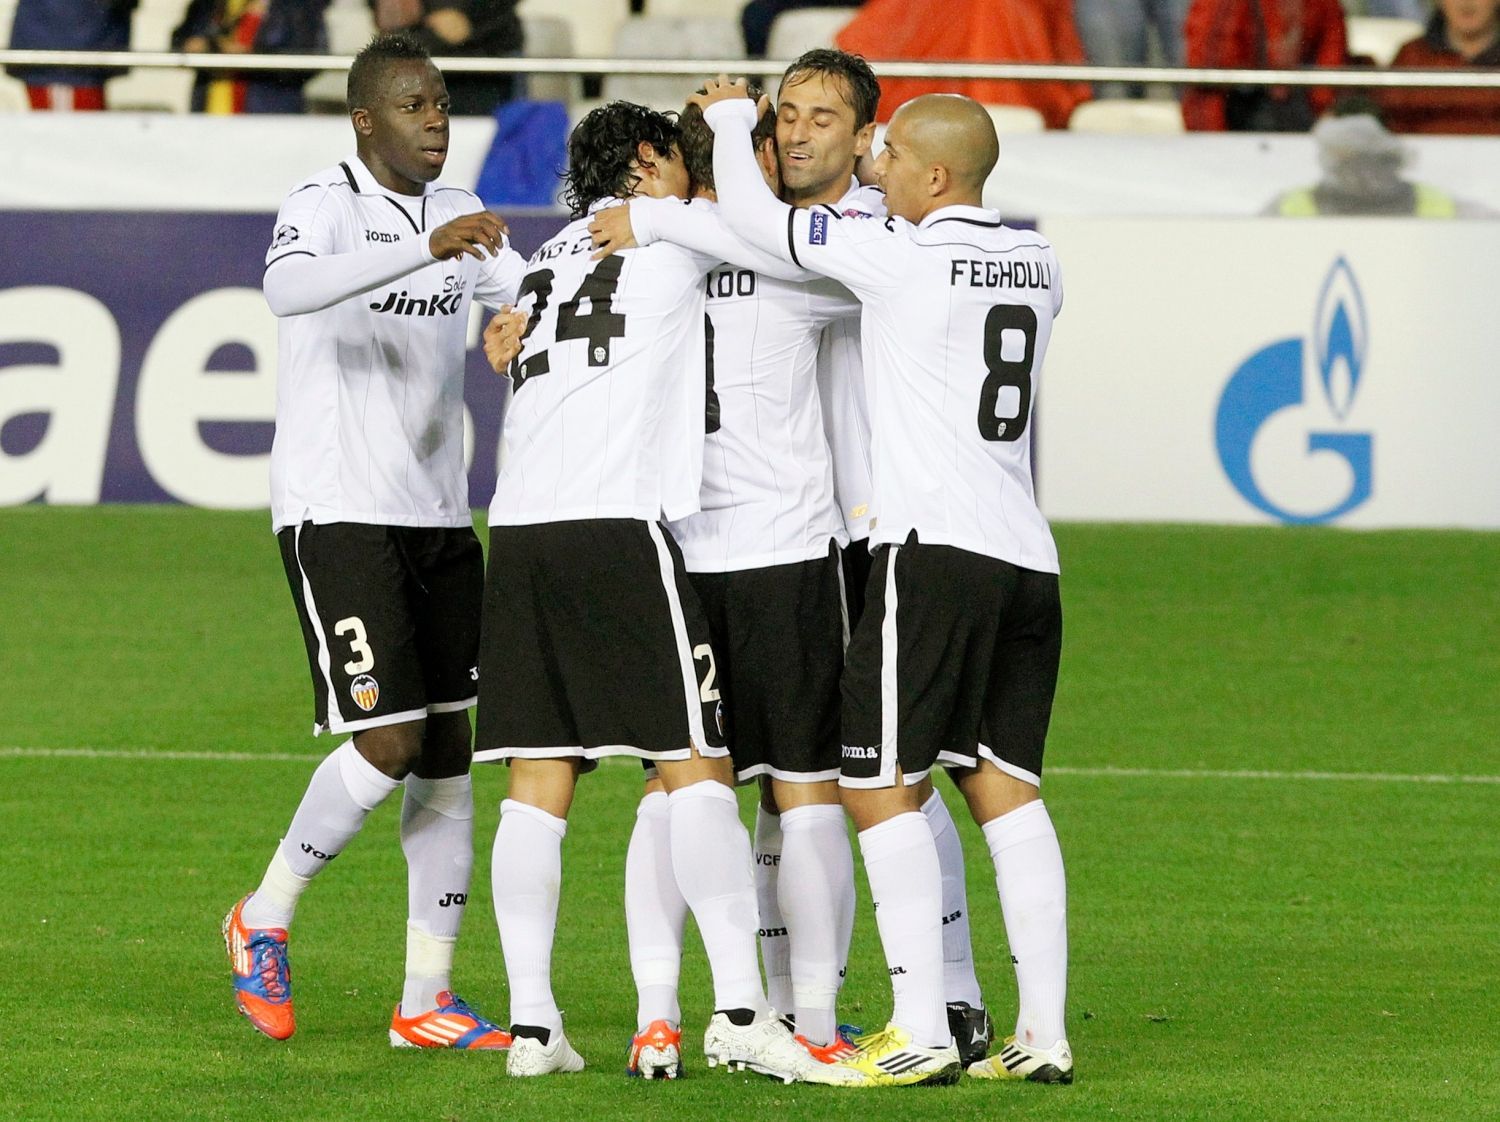 Fotbalisté Valencie slaví gól v utkání proti BATE Borisovu v Lize mistrů 2012/13.